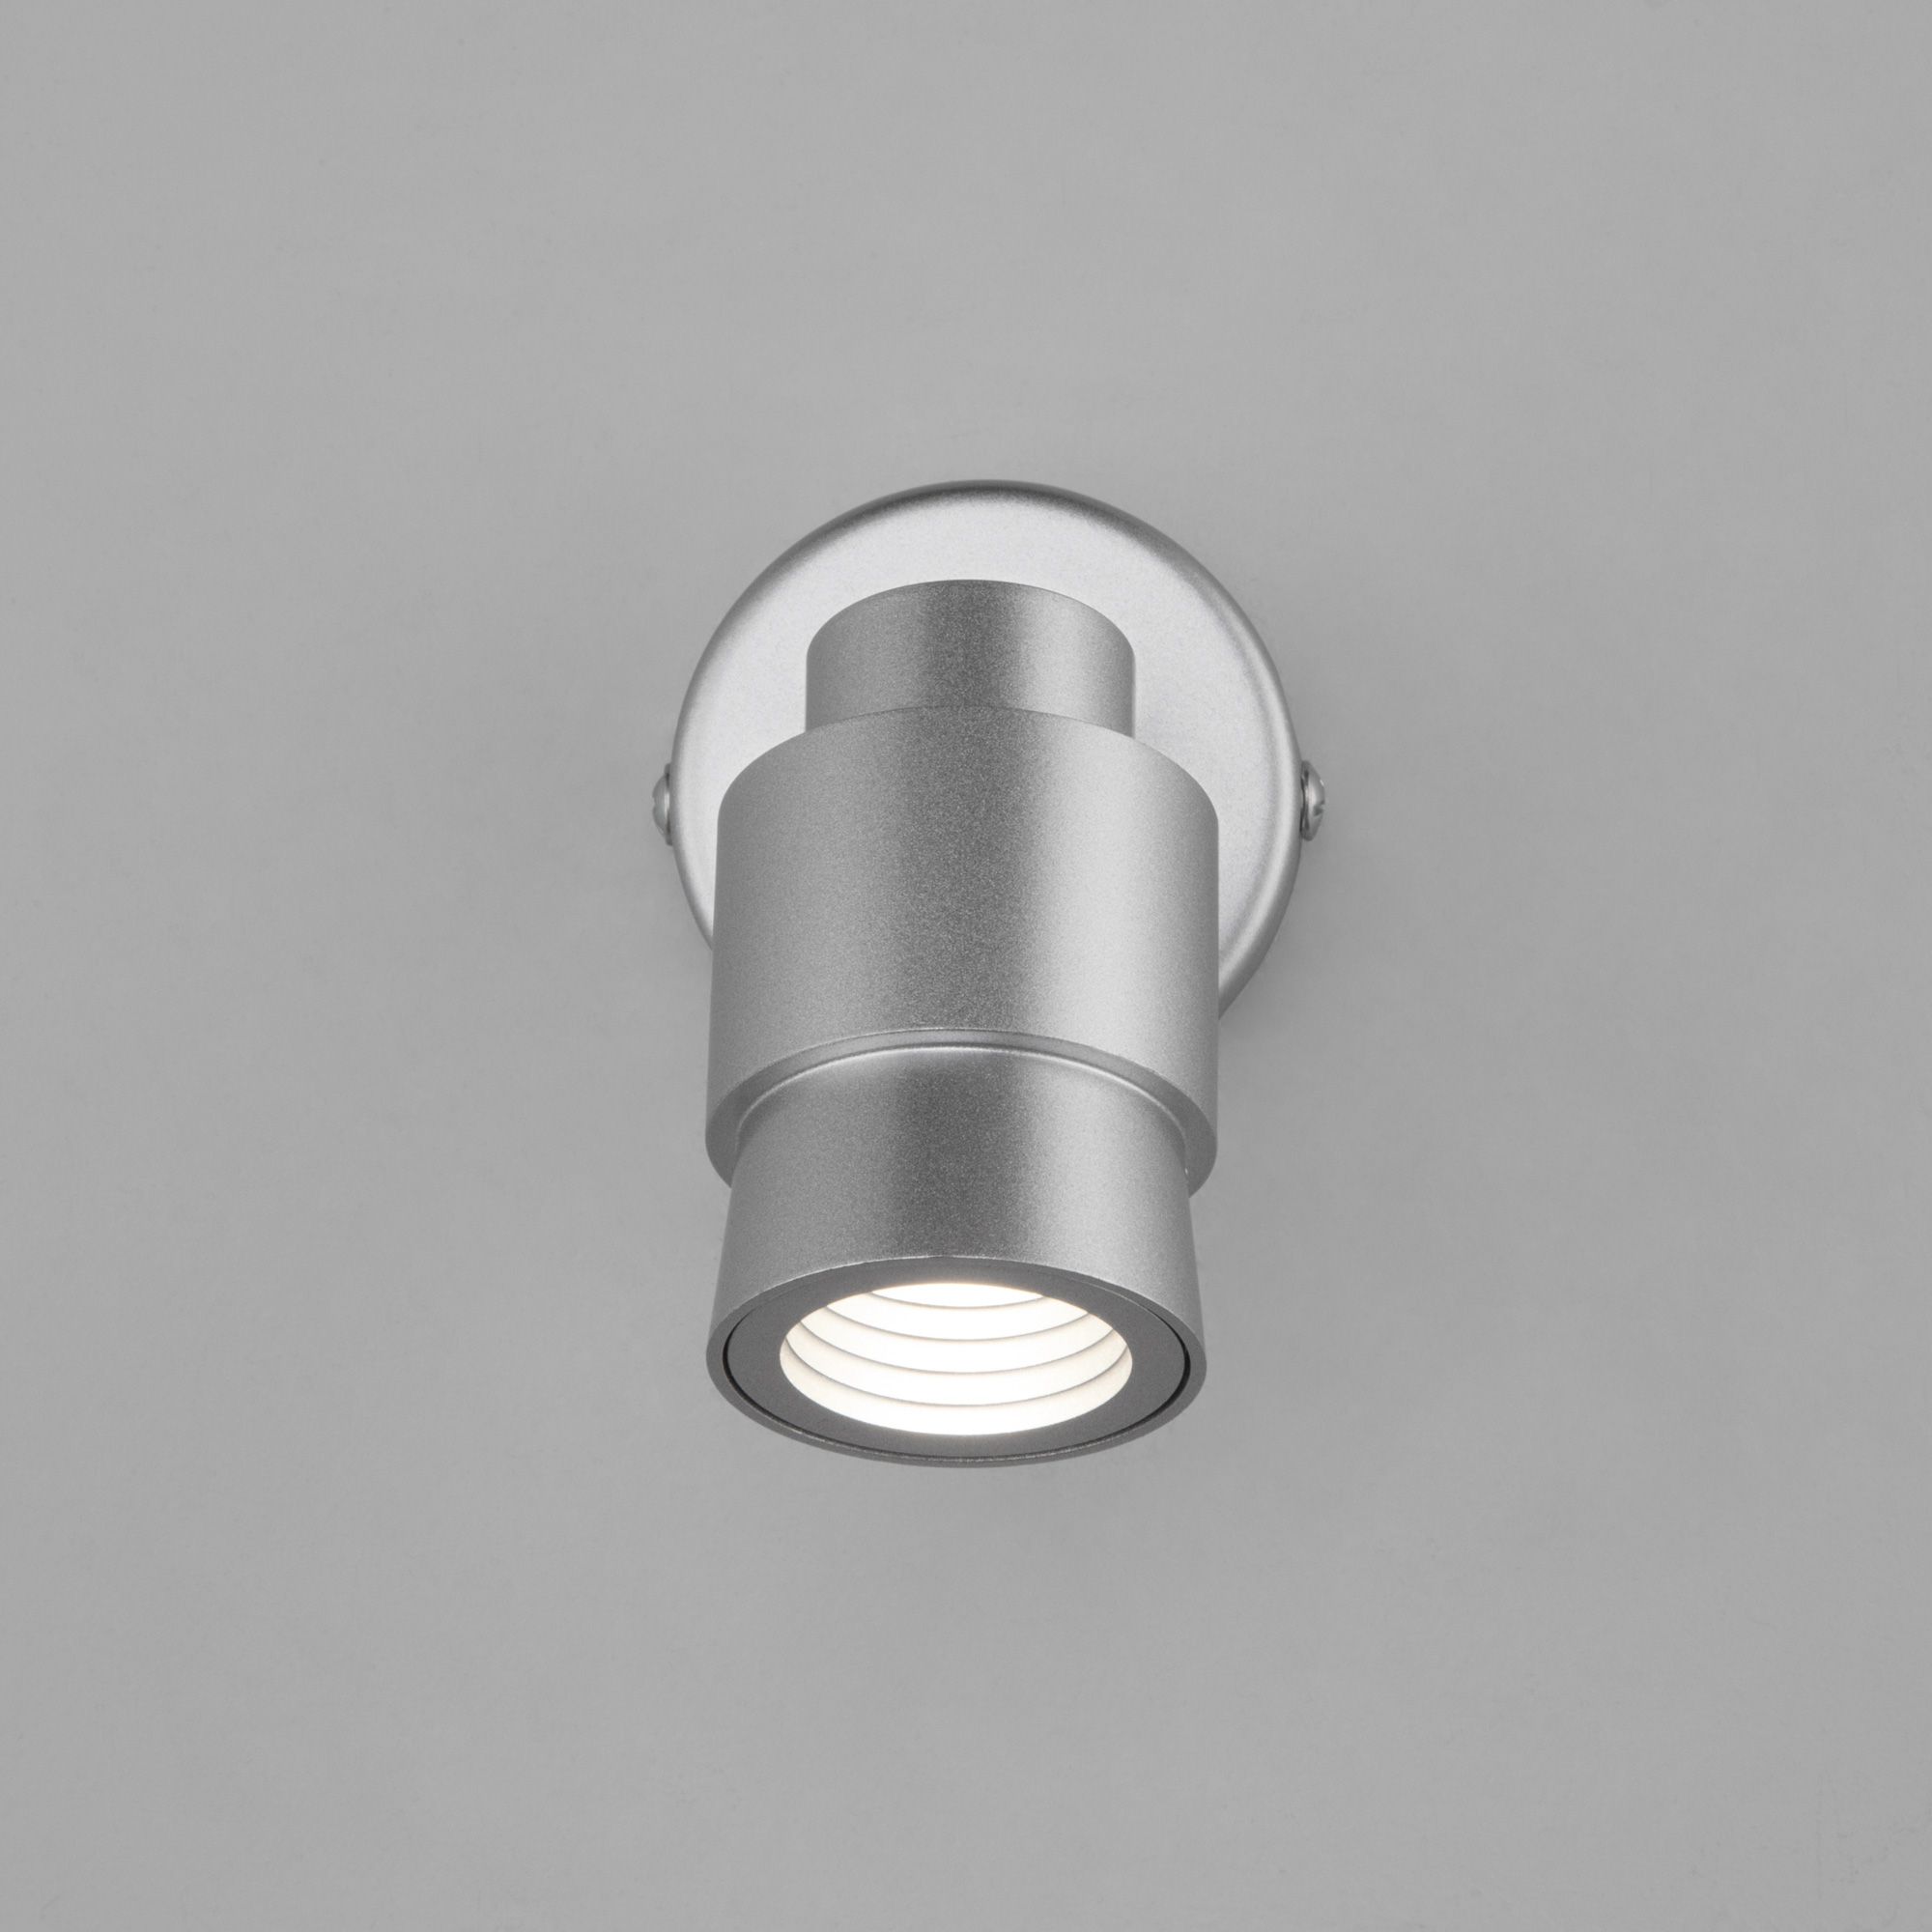 Настенный светодиодный светильник Eurosvet Plat a057394 20125/1 LED серебро фото